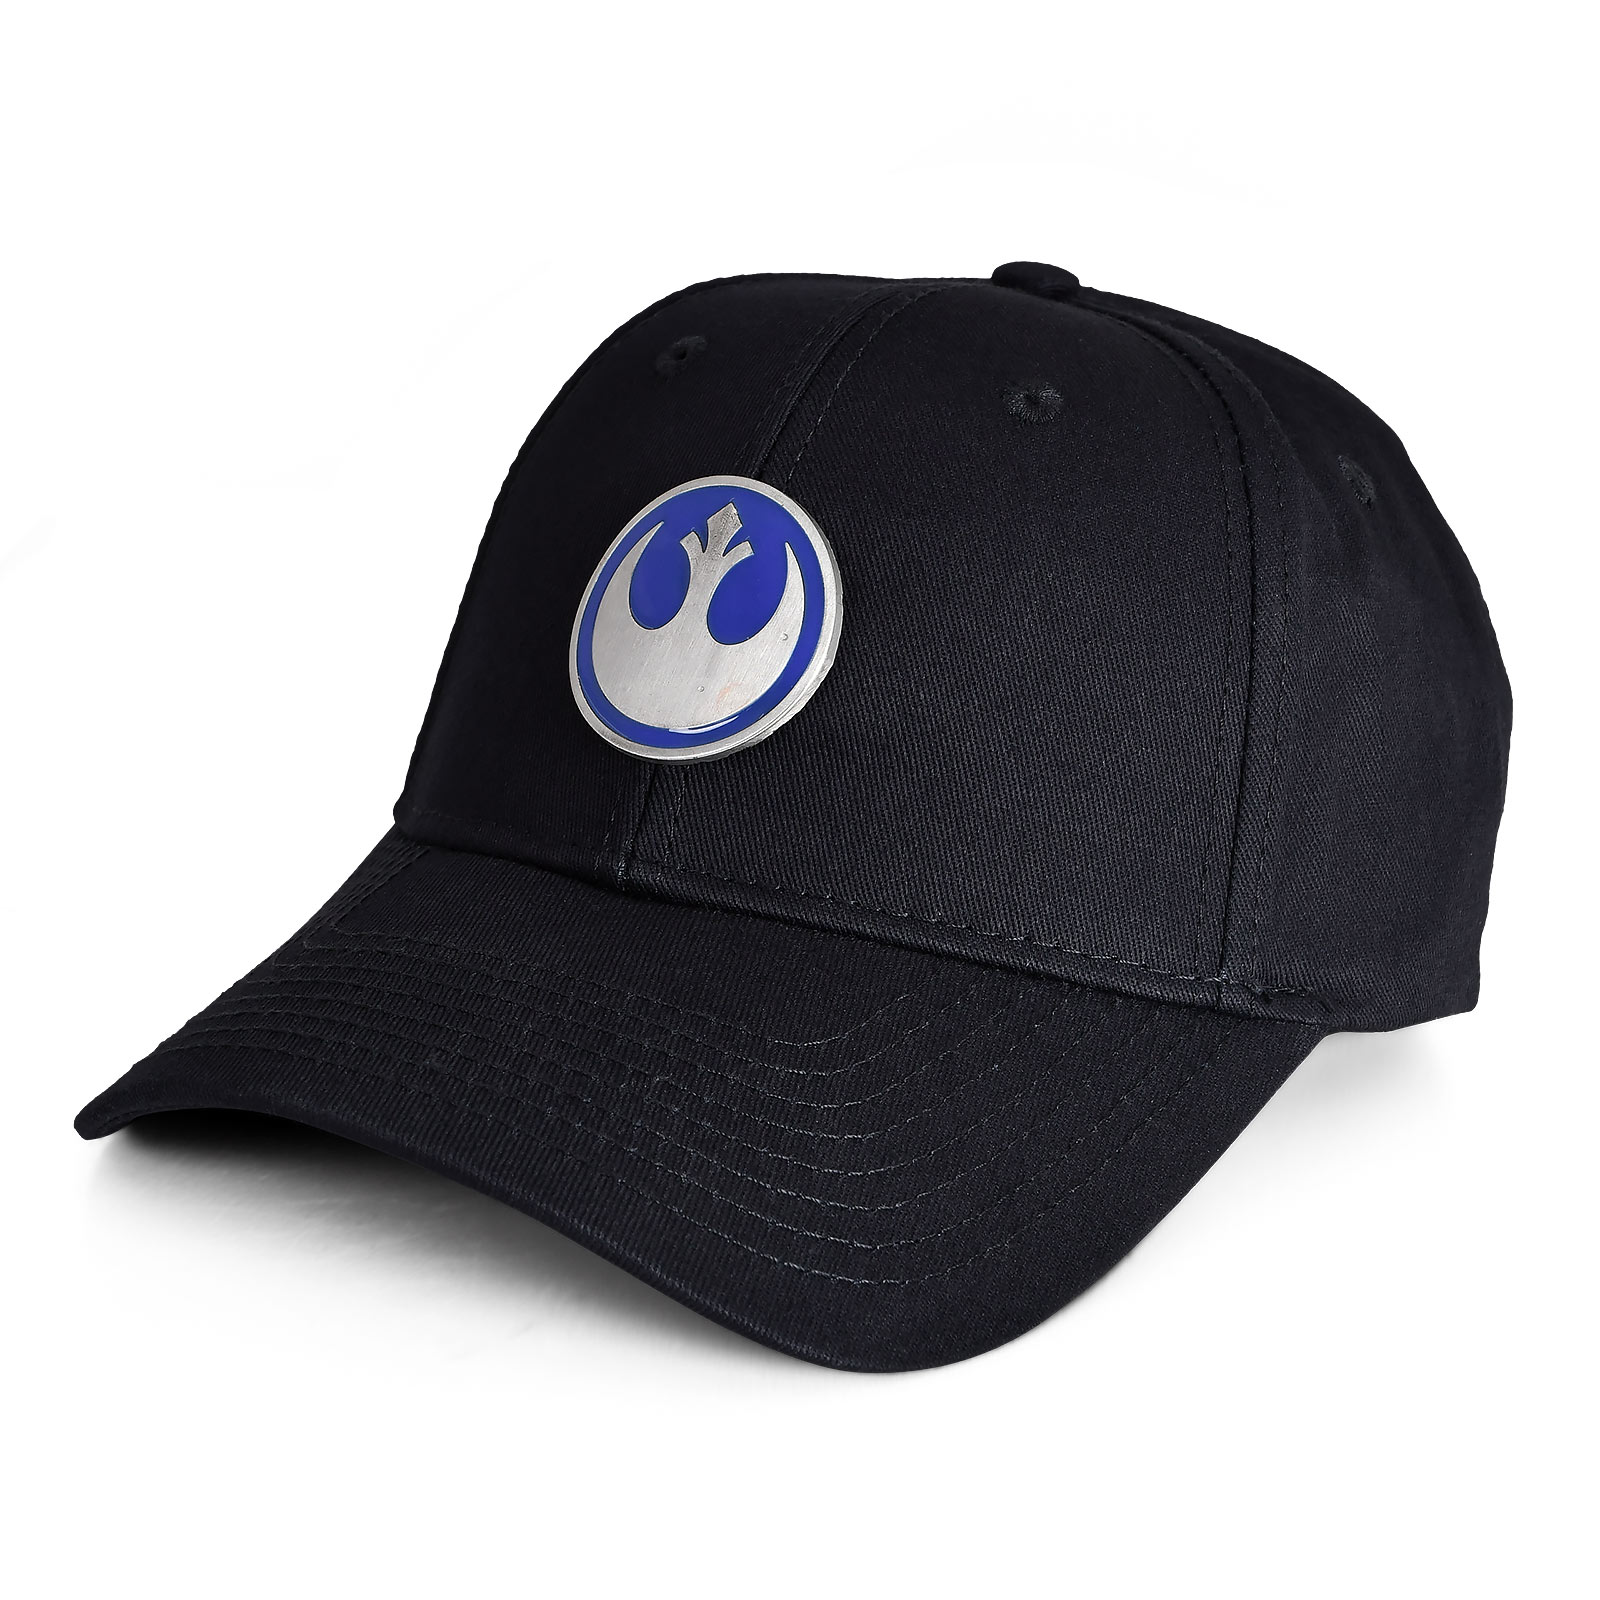 Star Wars - Rebel Alliance Metal Logo Baseball Cap